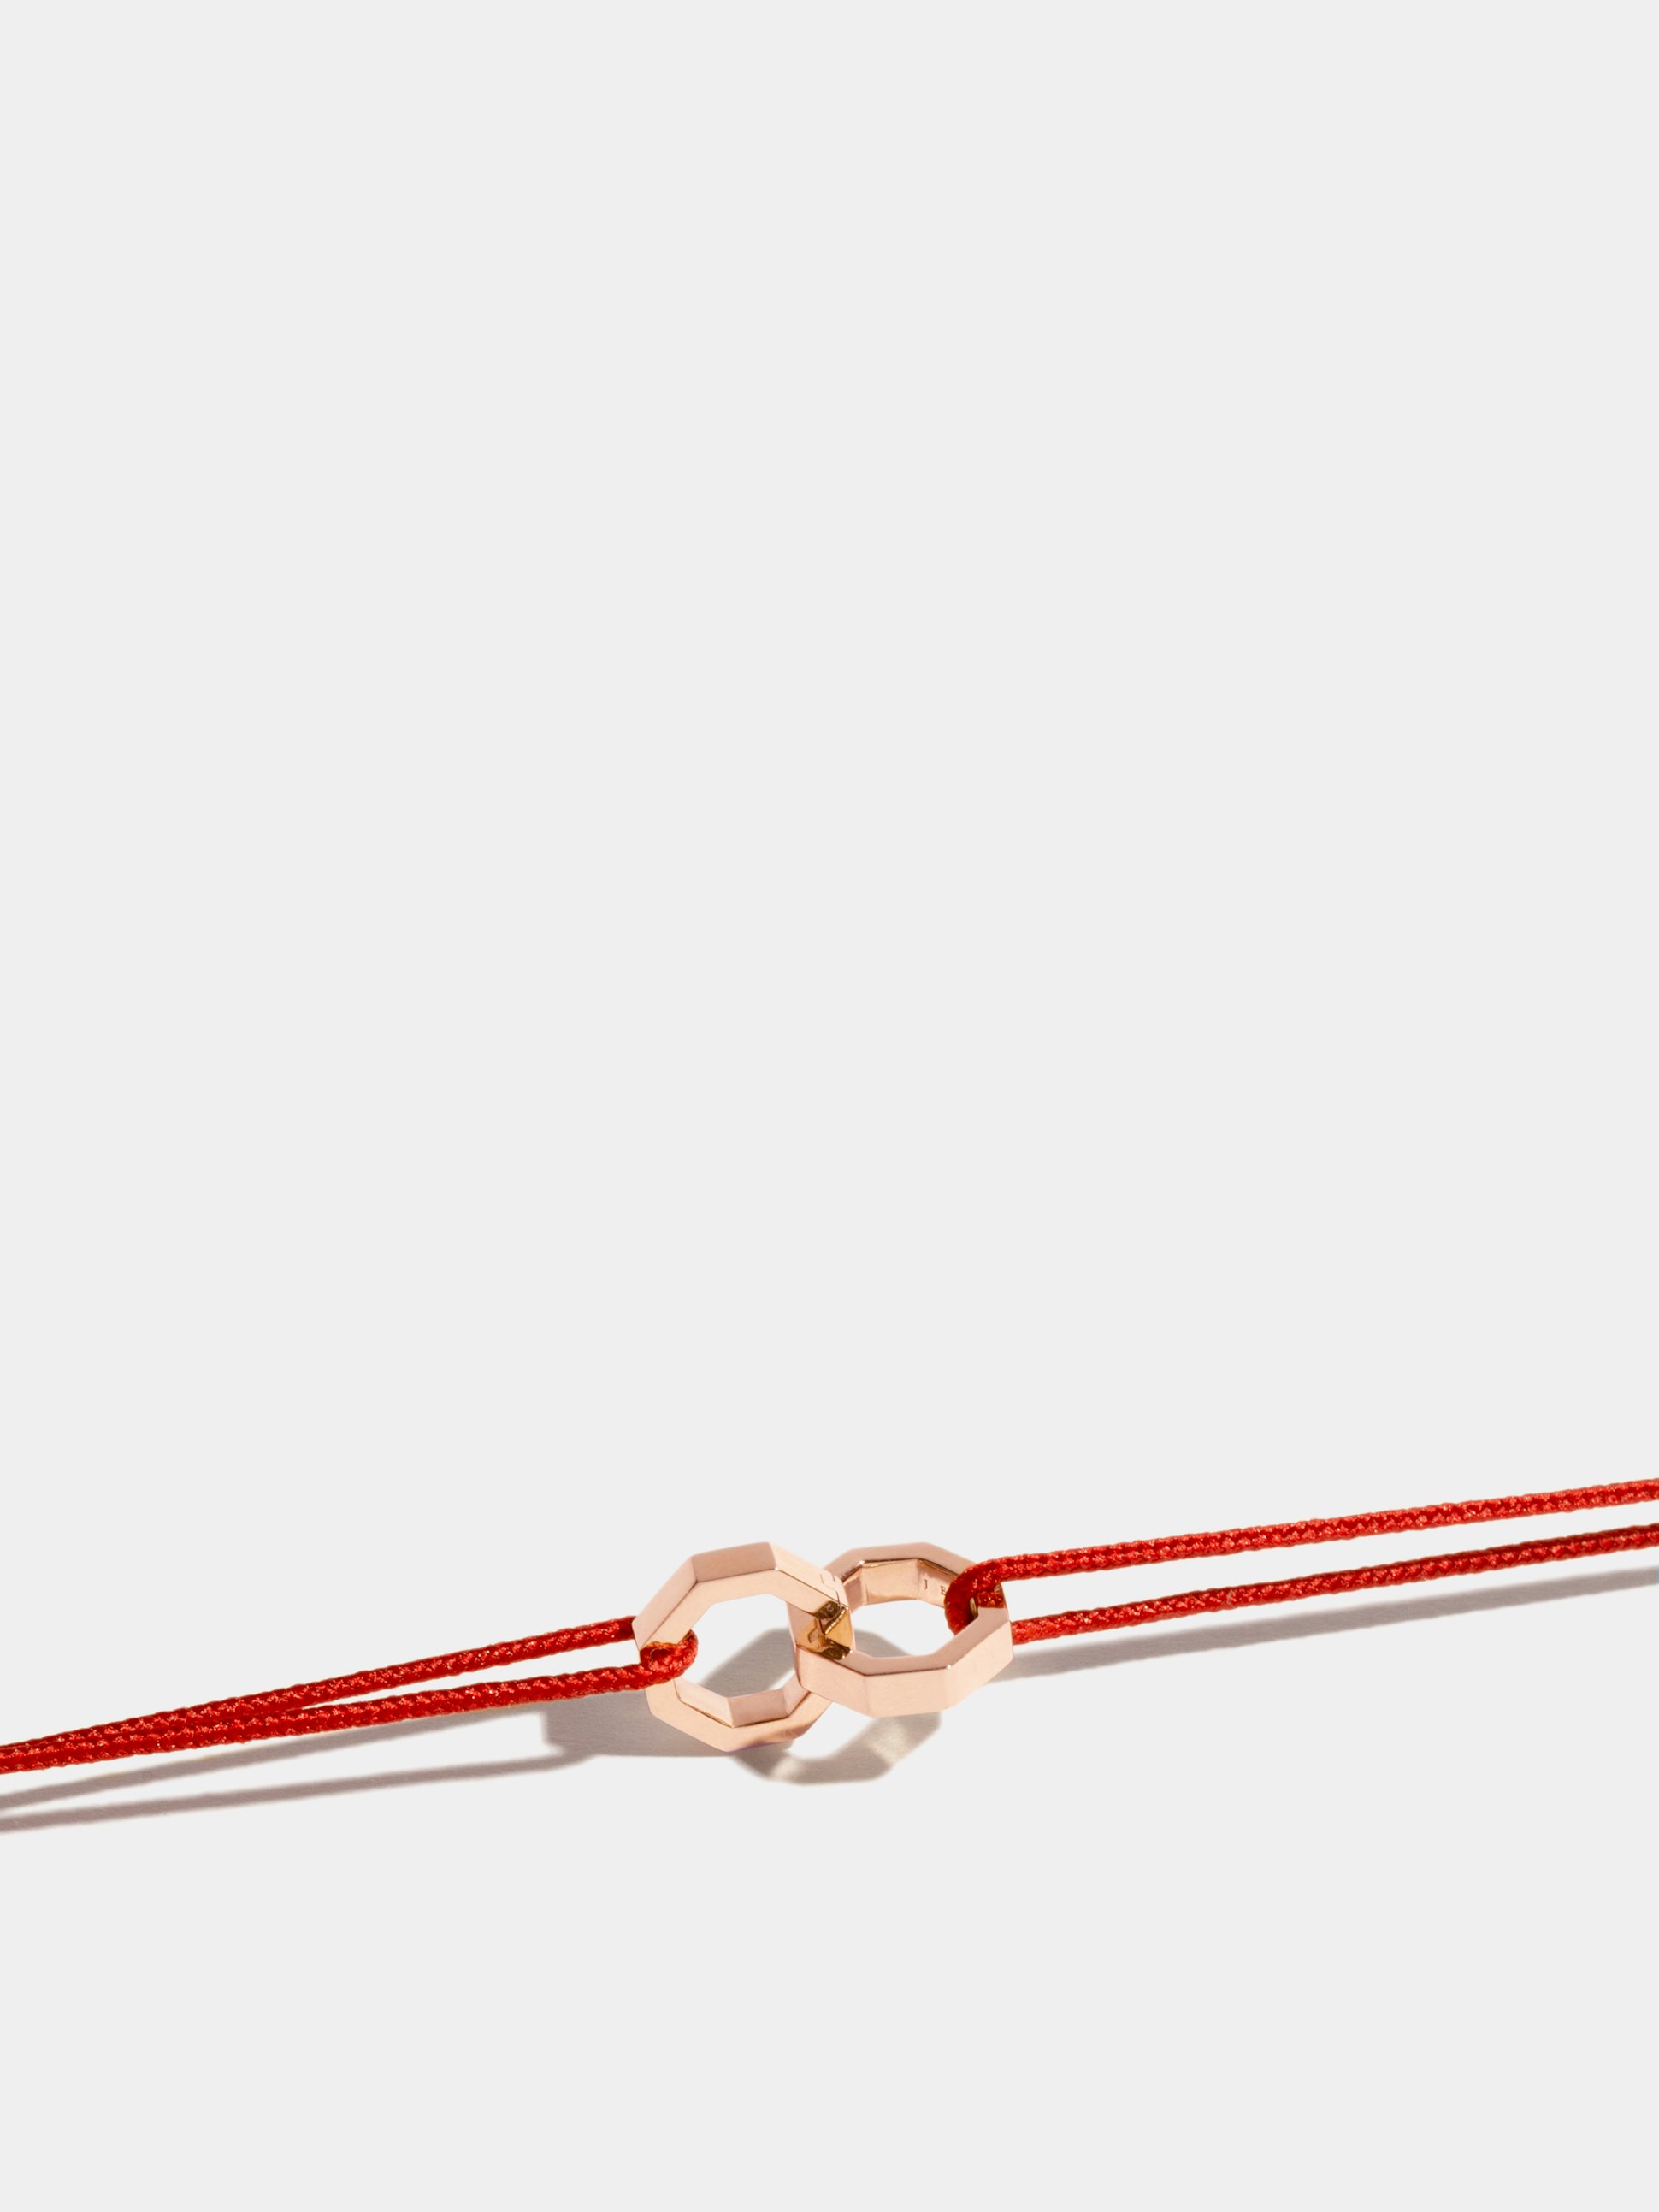 Bracelet double Octogone en Or rose éthique 18 carats certifié Fairmined, sur cordon rouge.